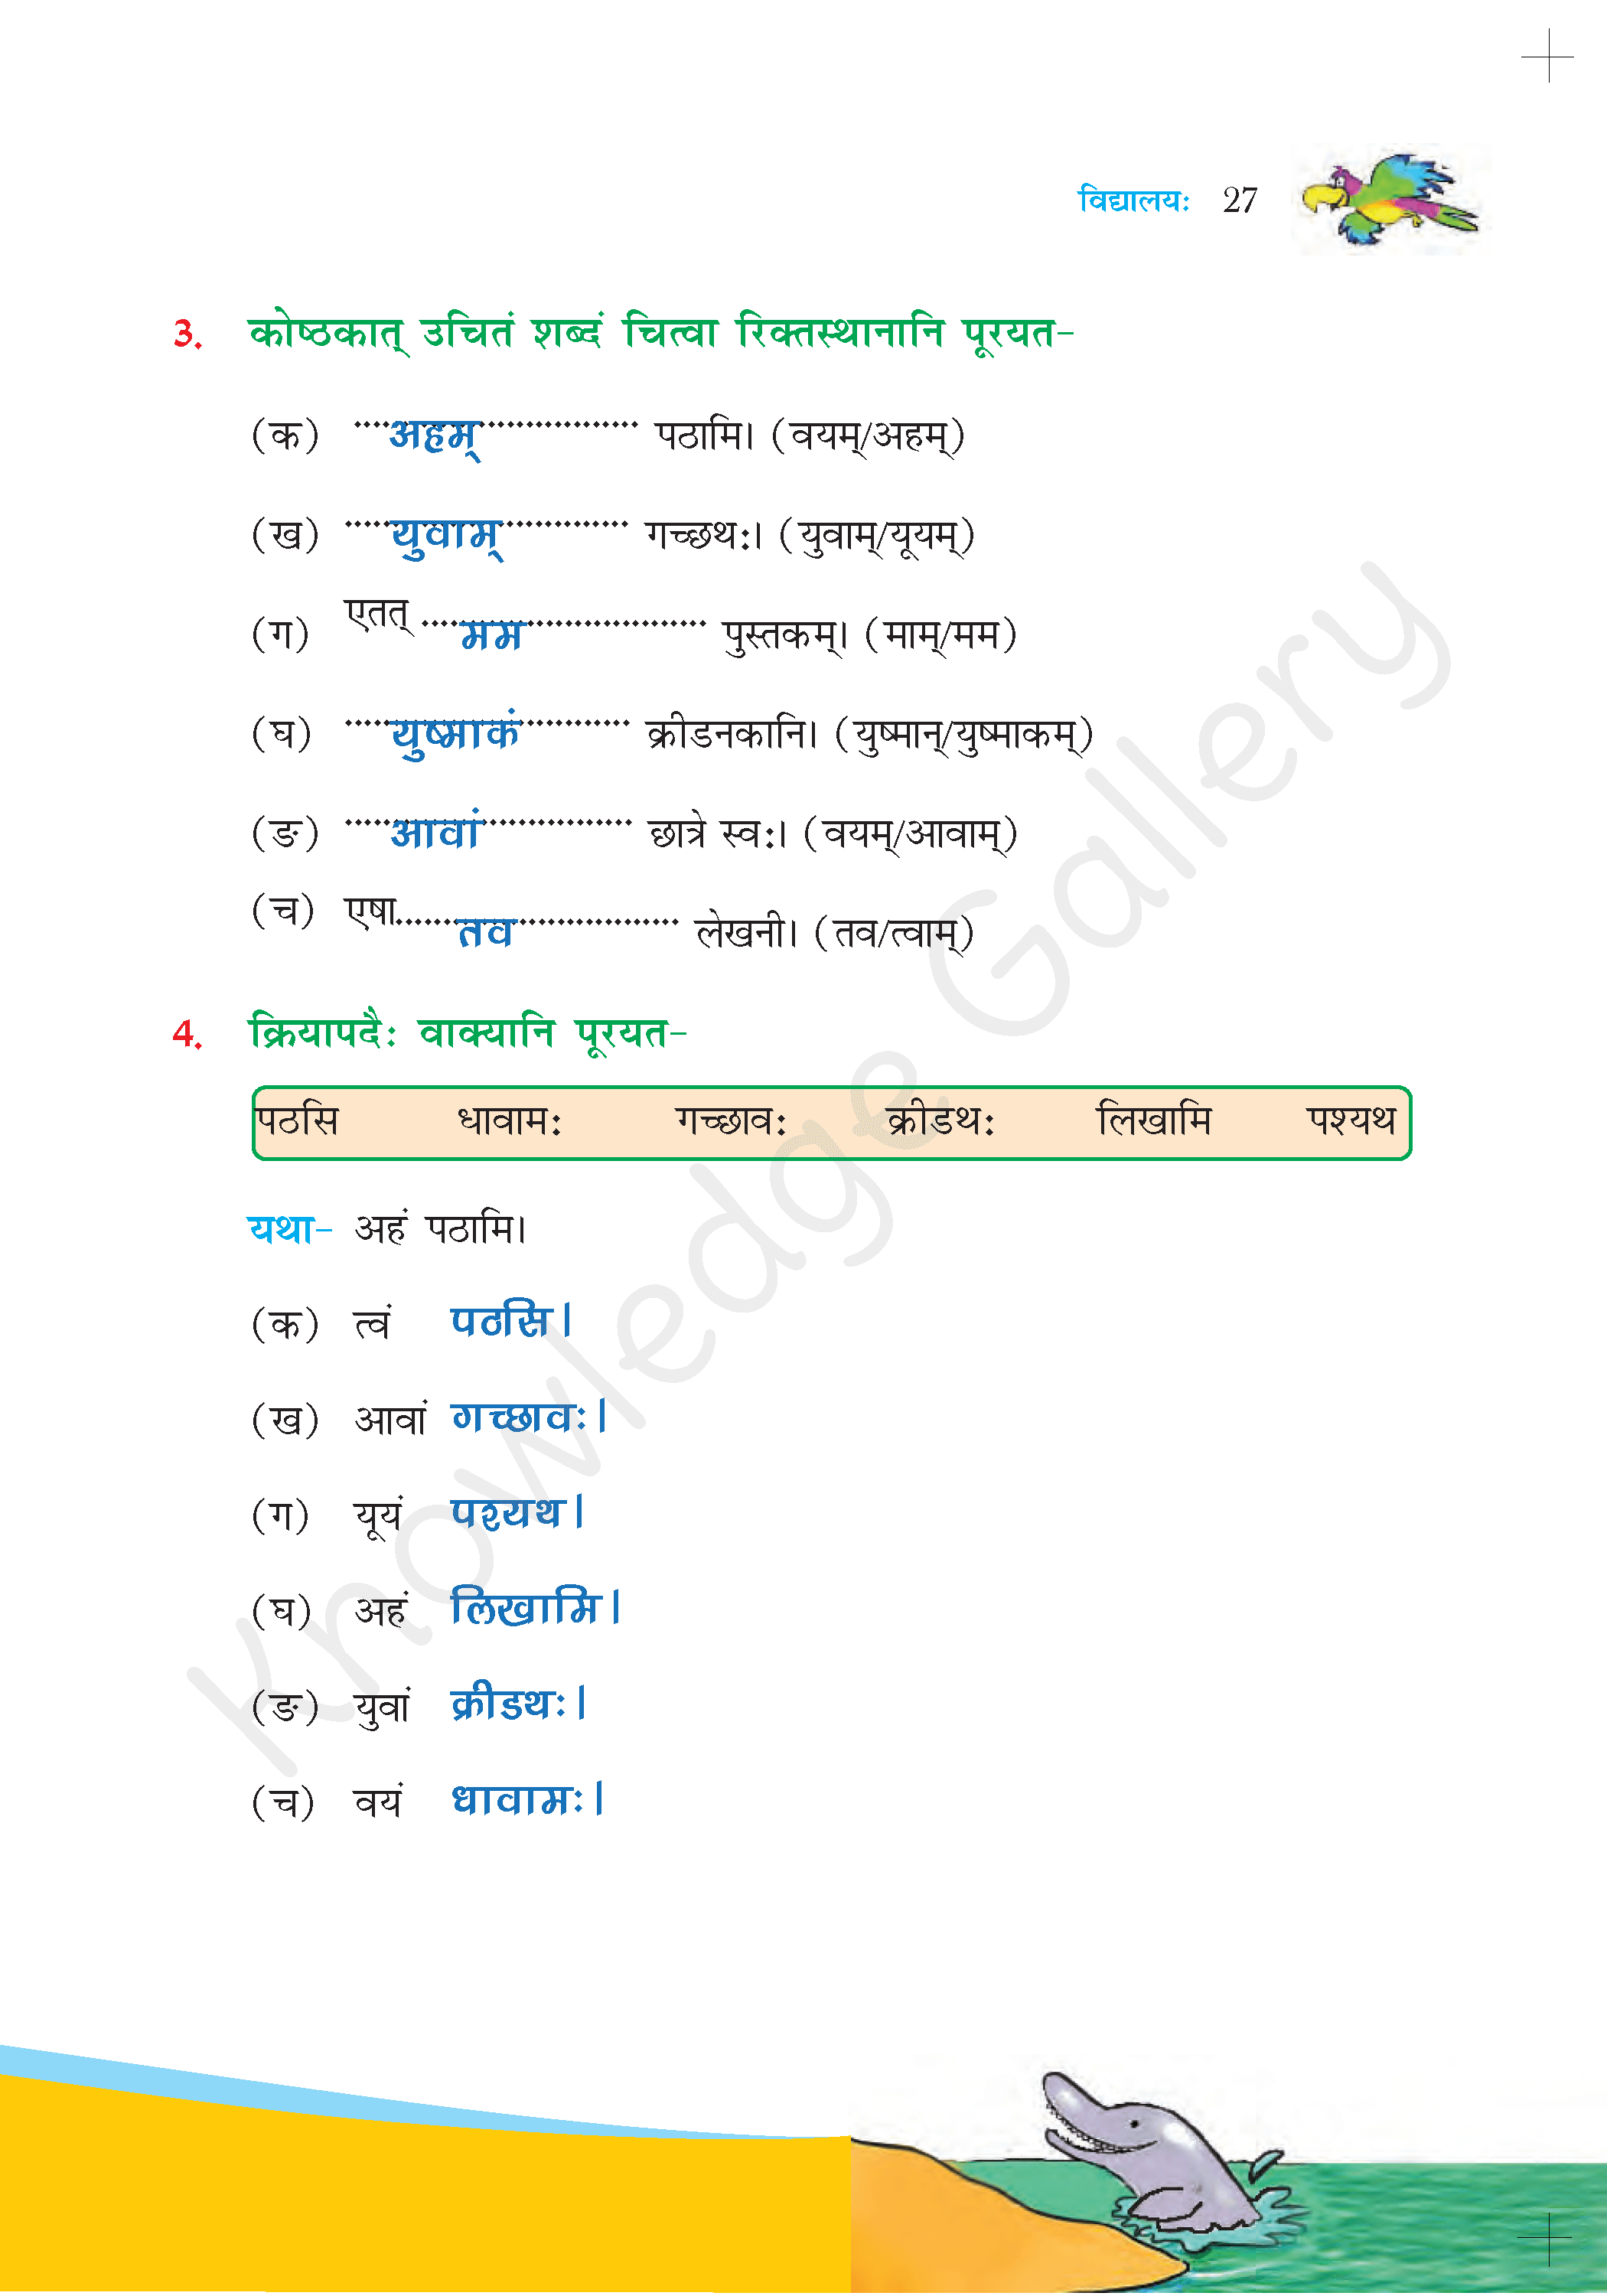 NCERT Solution For Class 6 Sanskrit Chapter 4 part 6